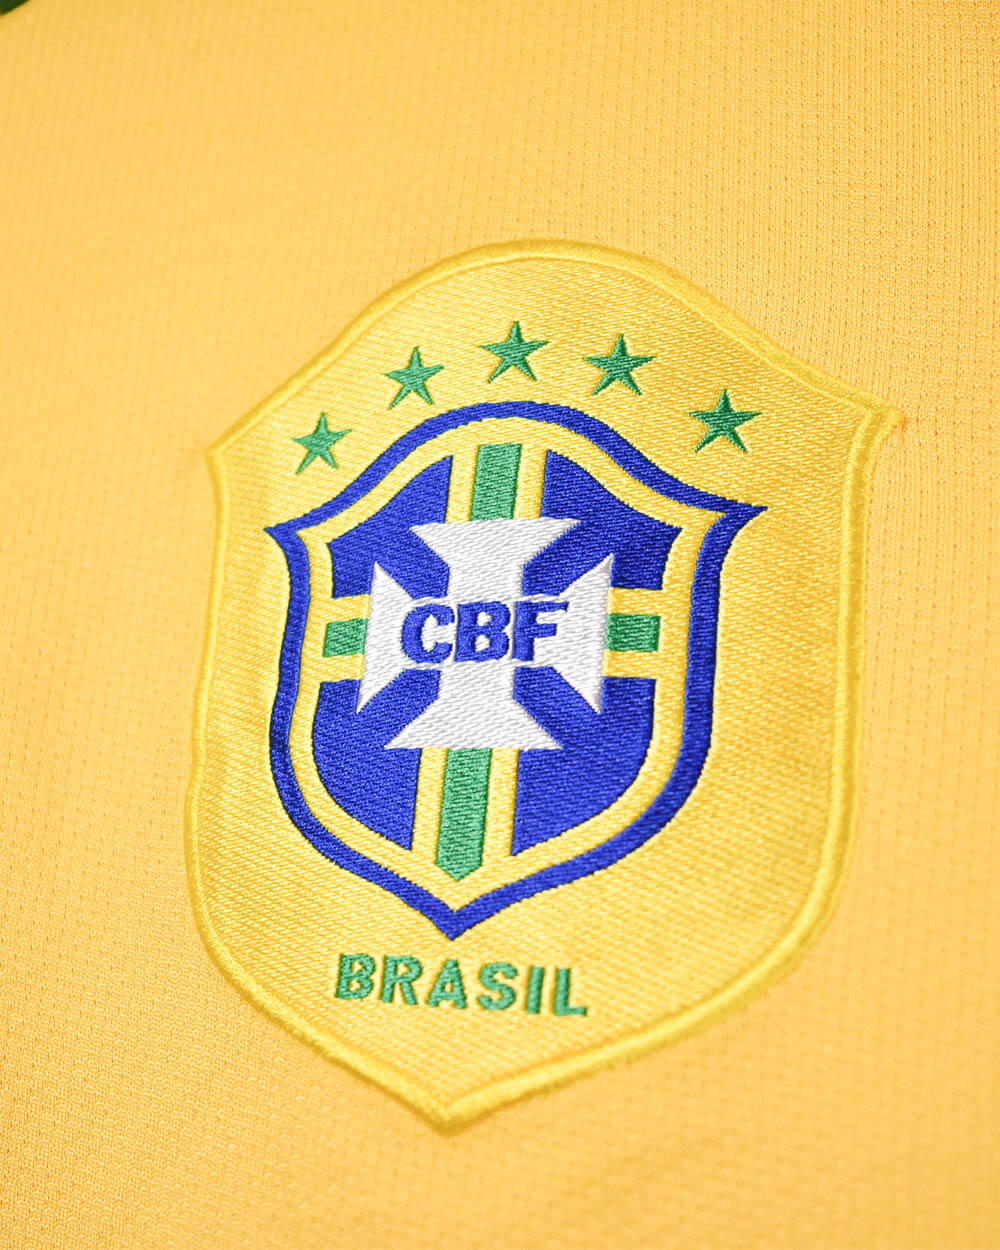 Yellow Nike Brazil 2006/08 Ronaldinho Football Shirt - Large